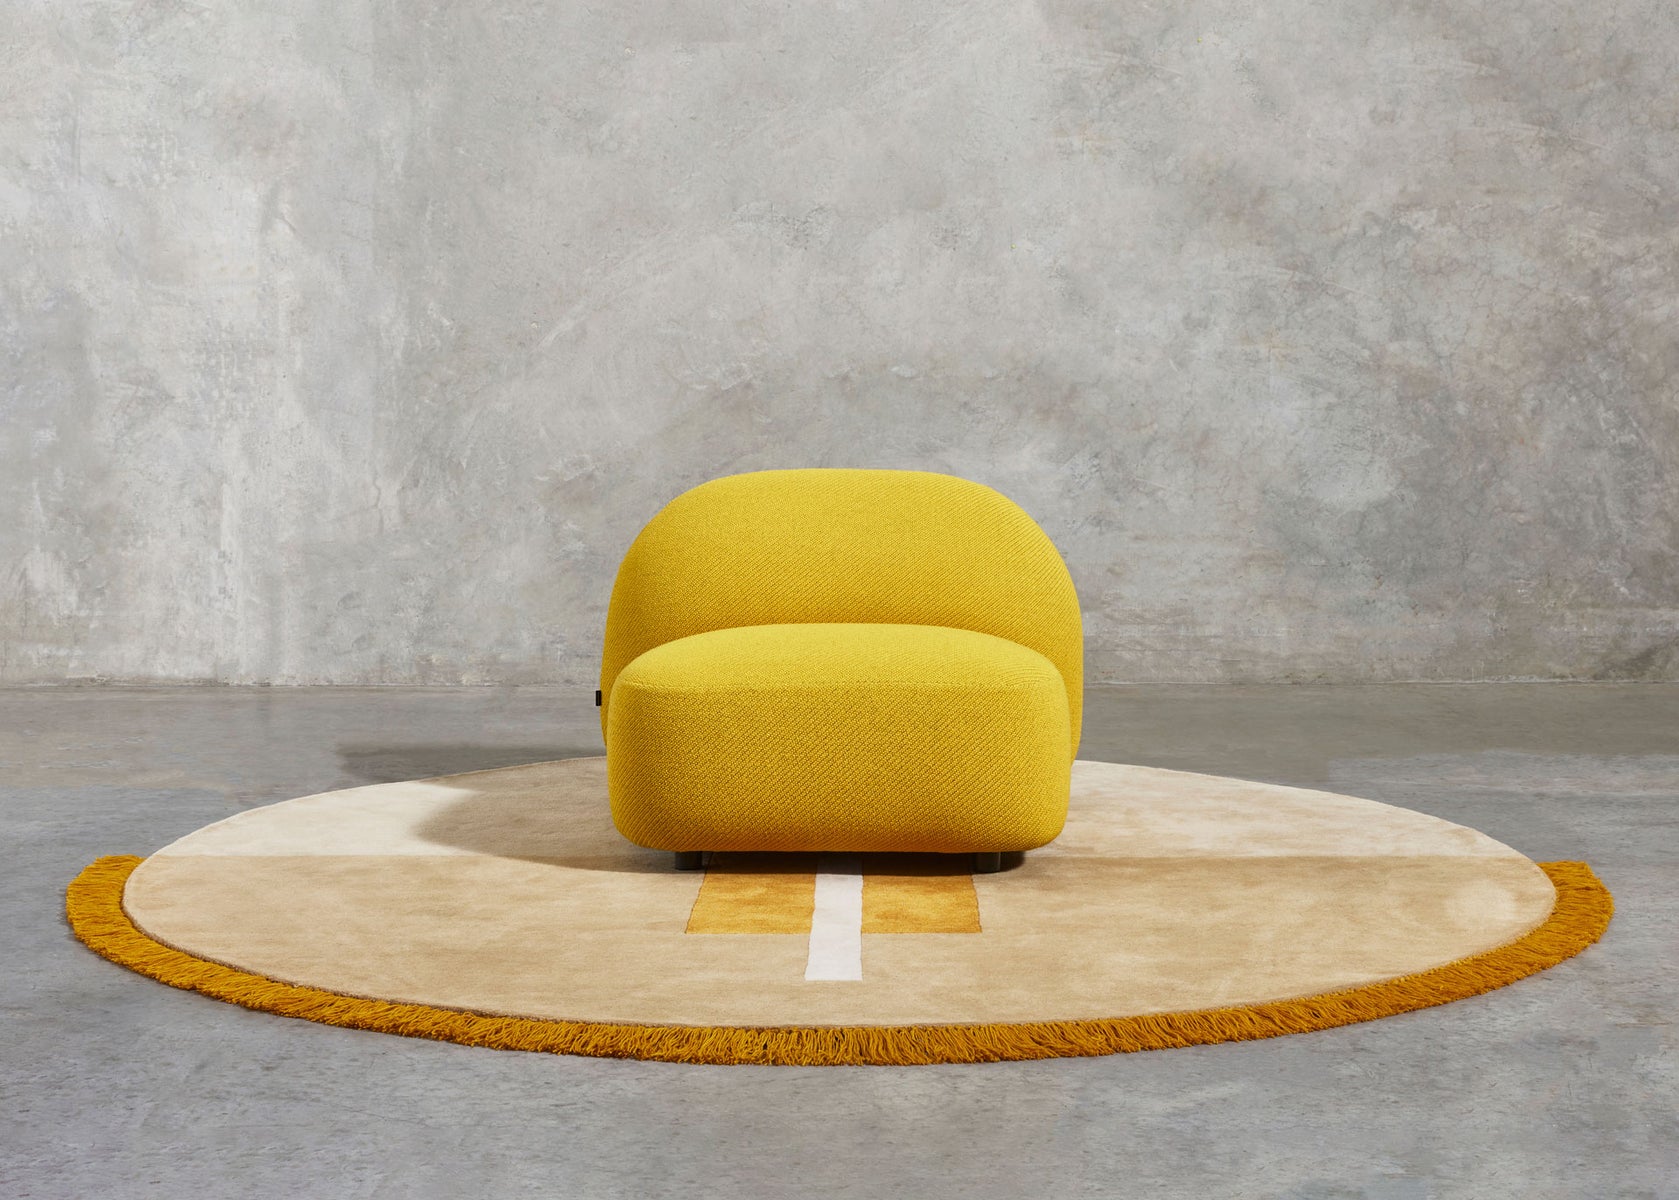 Overlay Mustard Circle Rug & Sundae Seat | DesignByThem | Gallery